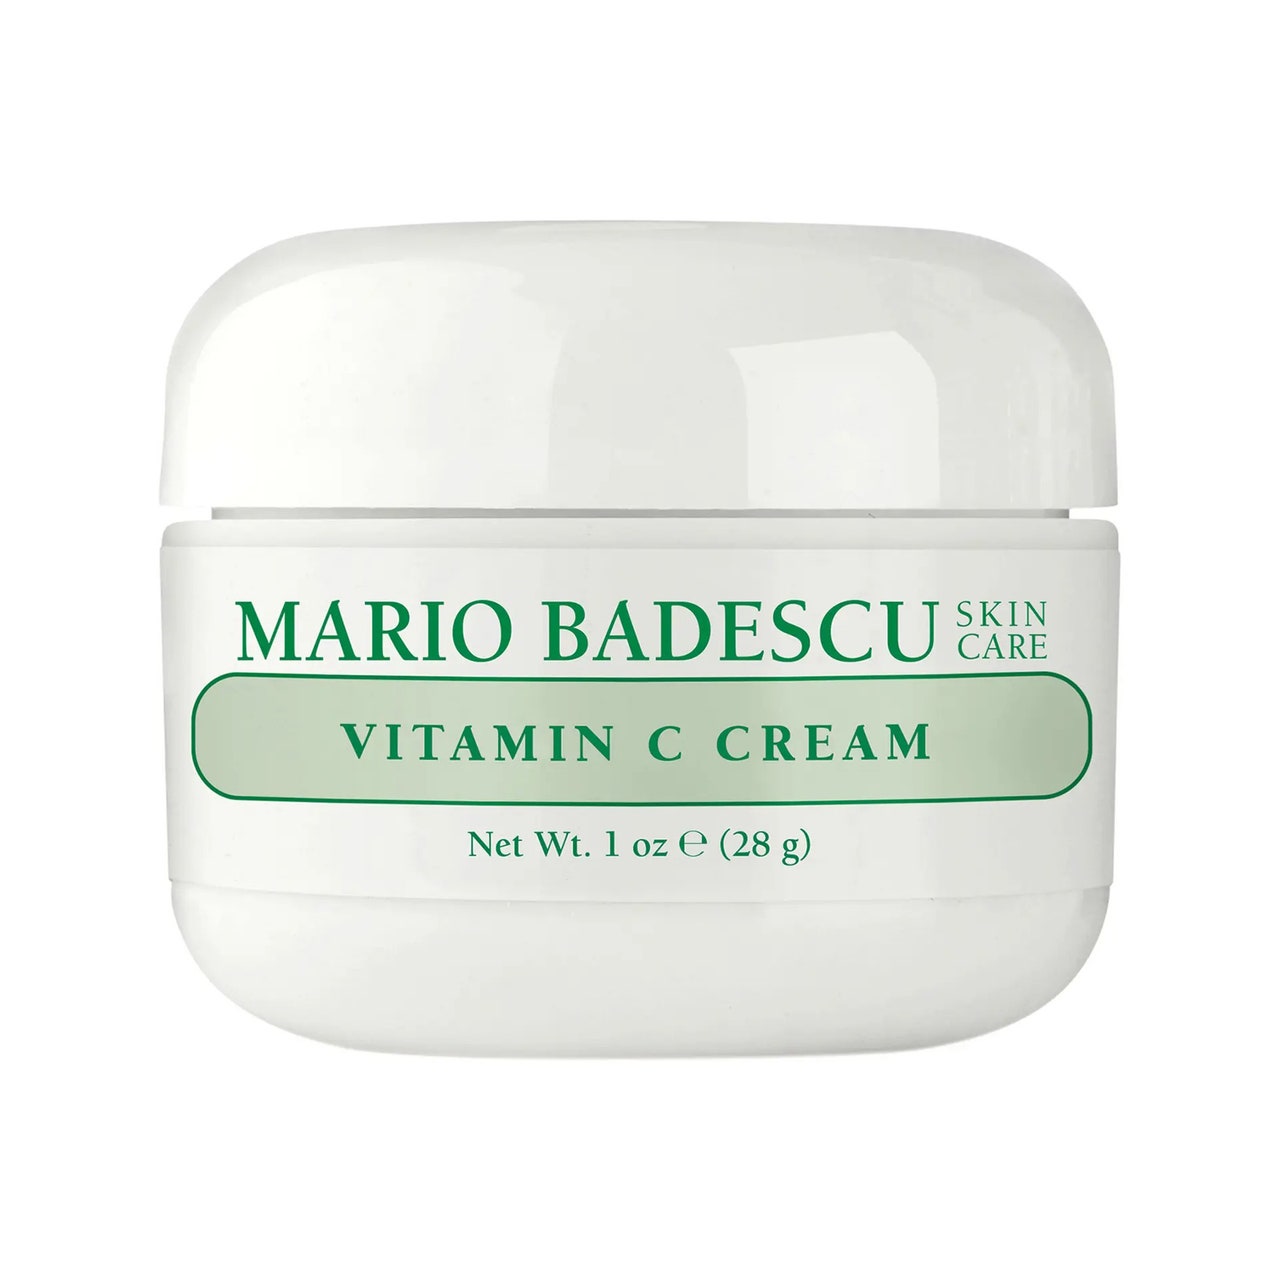 Mario Badescu Vitamin C Cream abgerundetes weißes Glas auf weißem Hintergrund